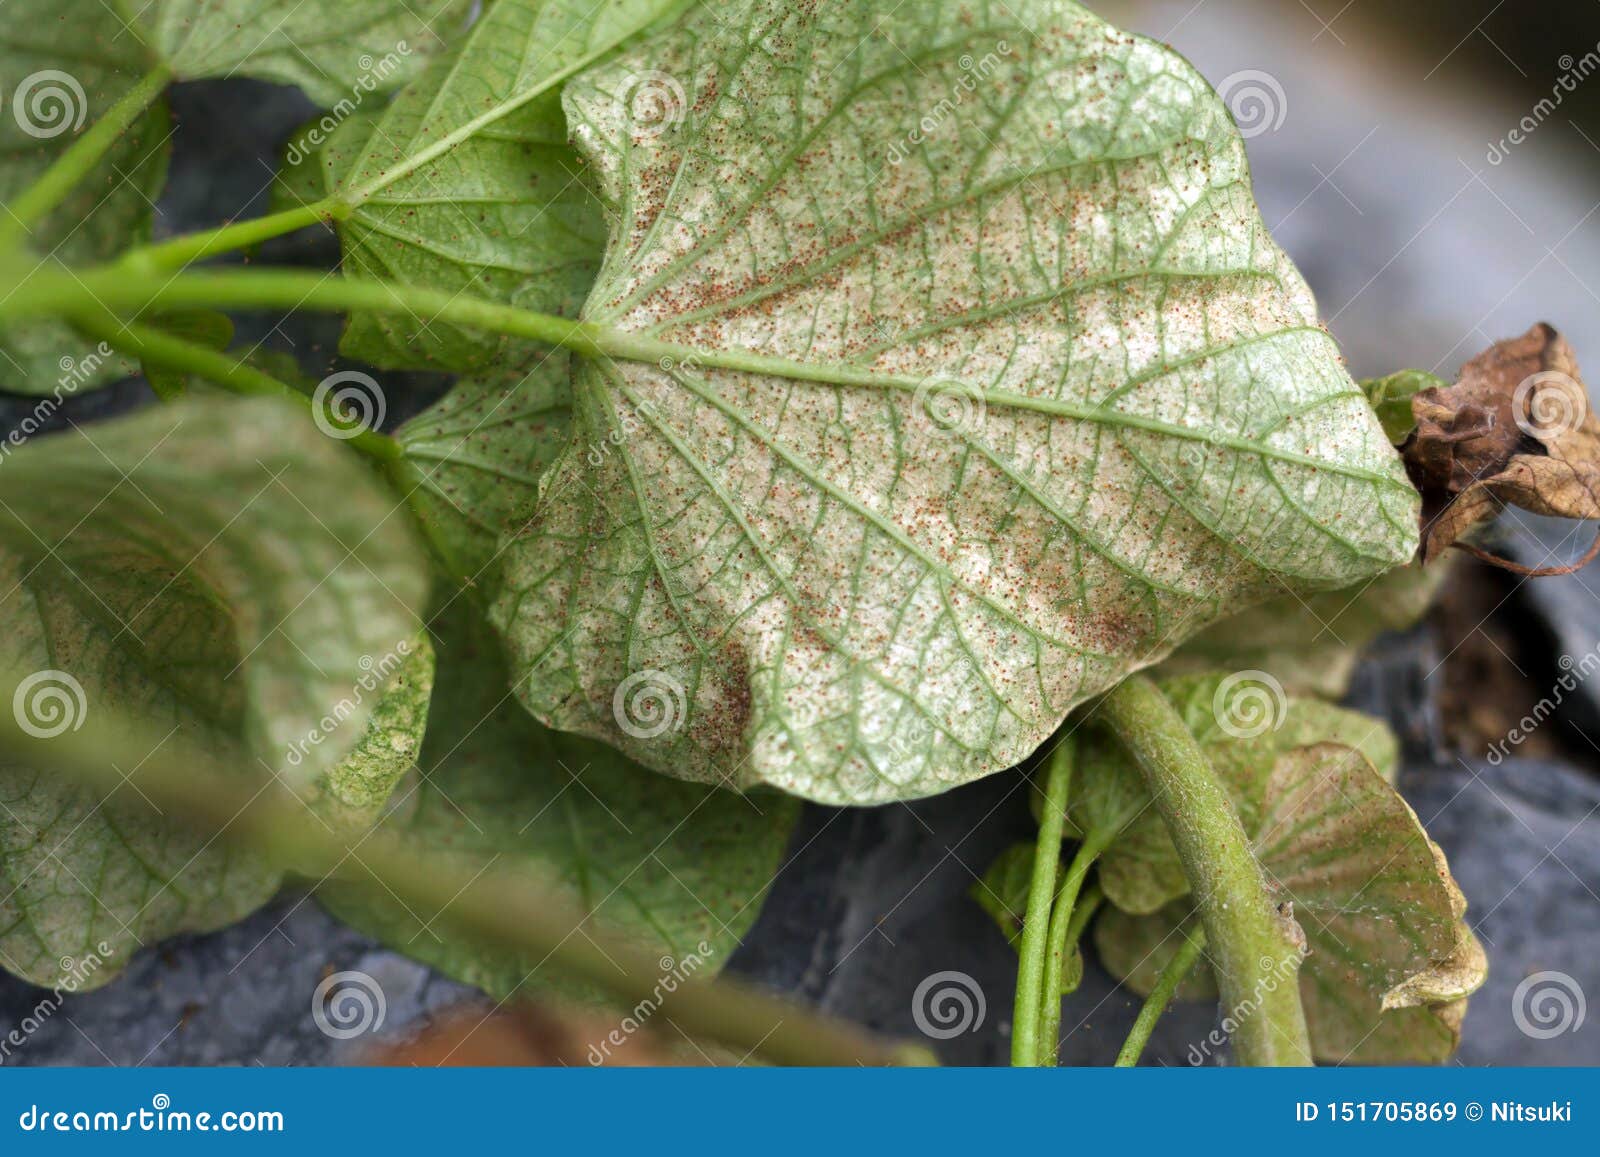 pest spider mile attack sweet potato leaf